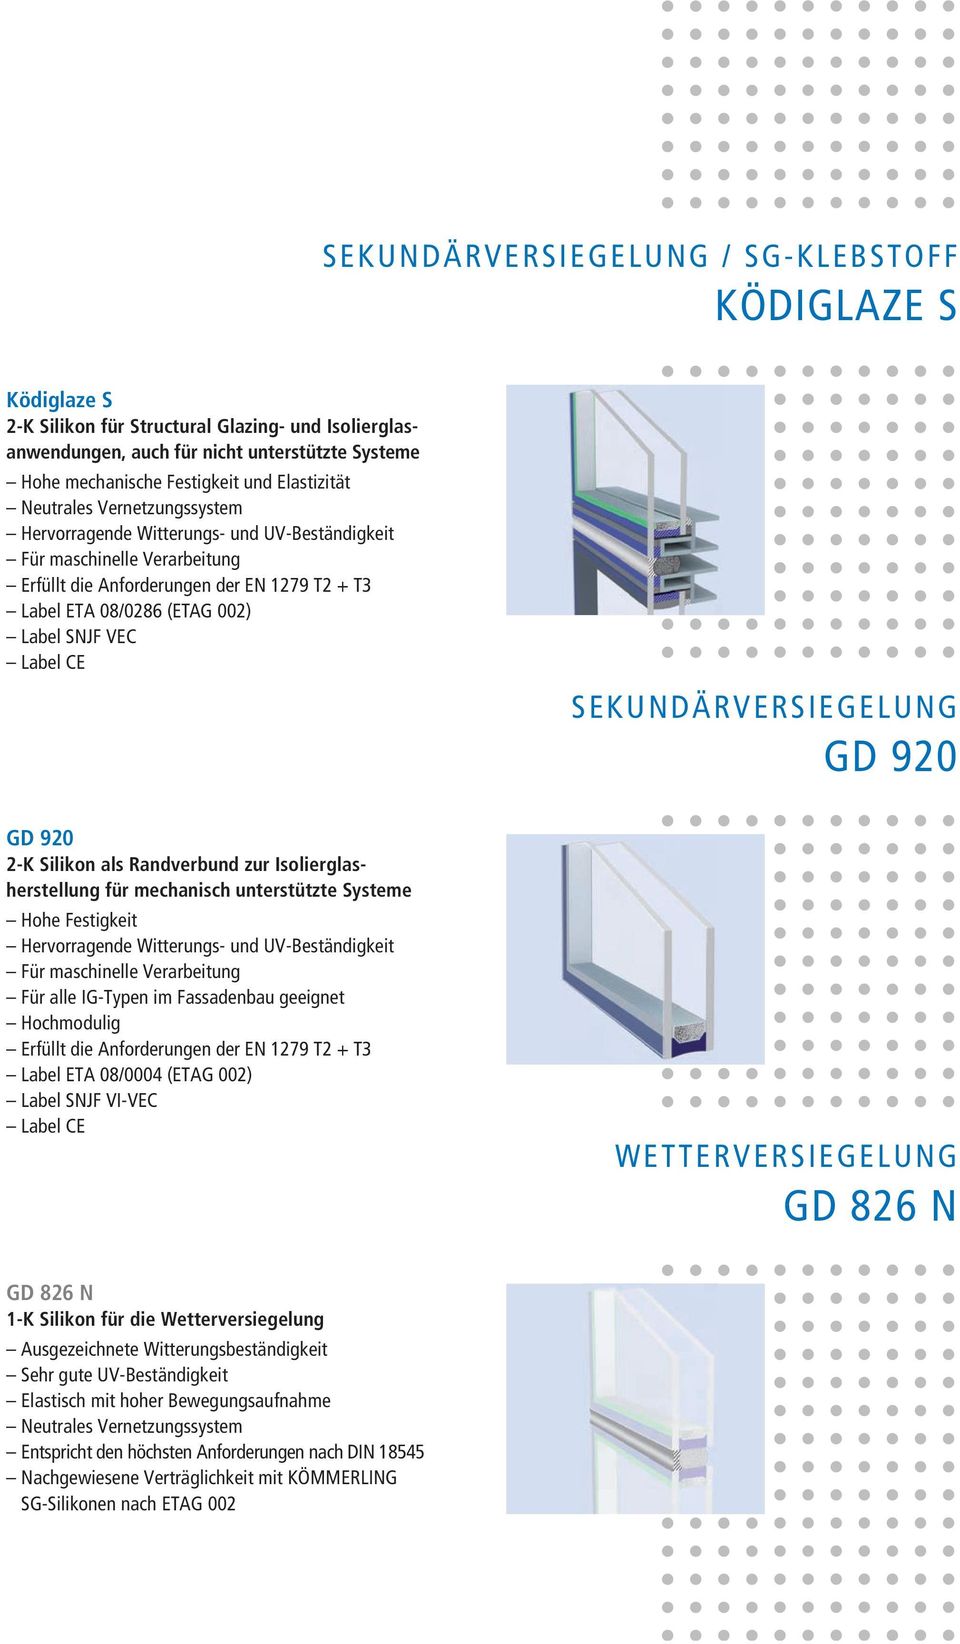 SNJF VEC Label CE gd 920 2-K silikon als randverbund zur isolierglasherstellung für mechanisch unterstützte systeme Hohe Festigkeit Hervorragende Witterungs- und UV-Beständigkeit Für maschinelle